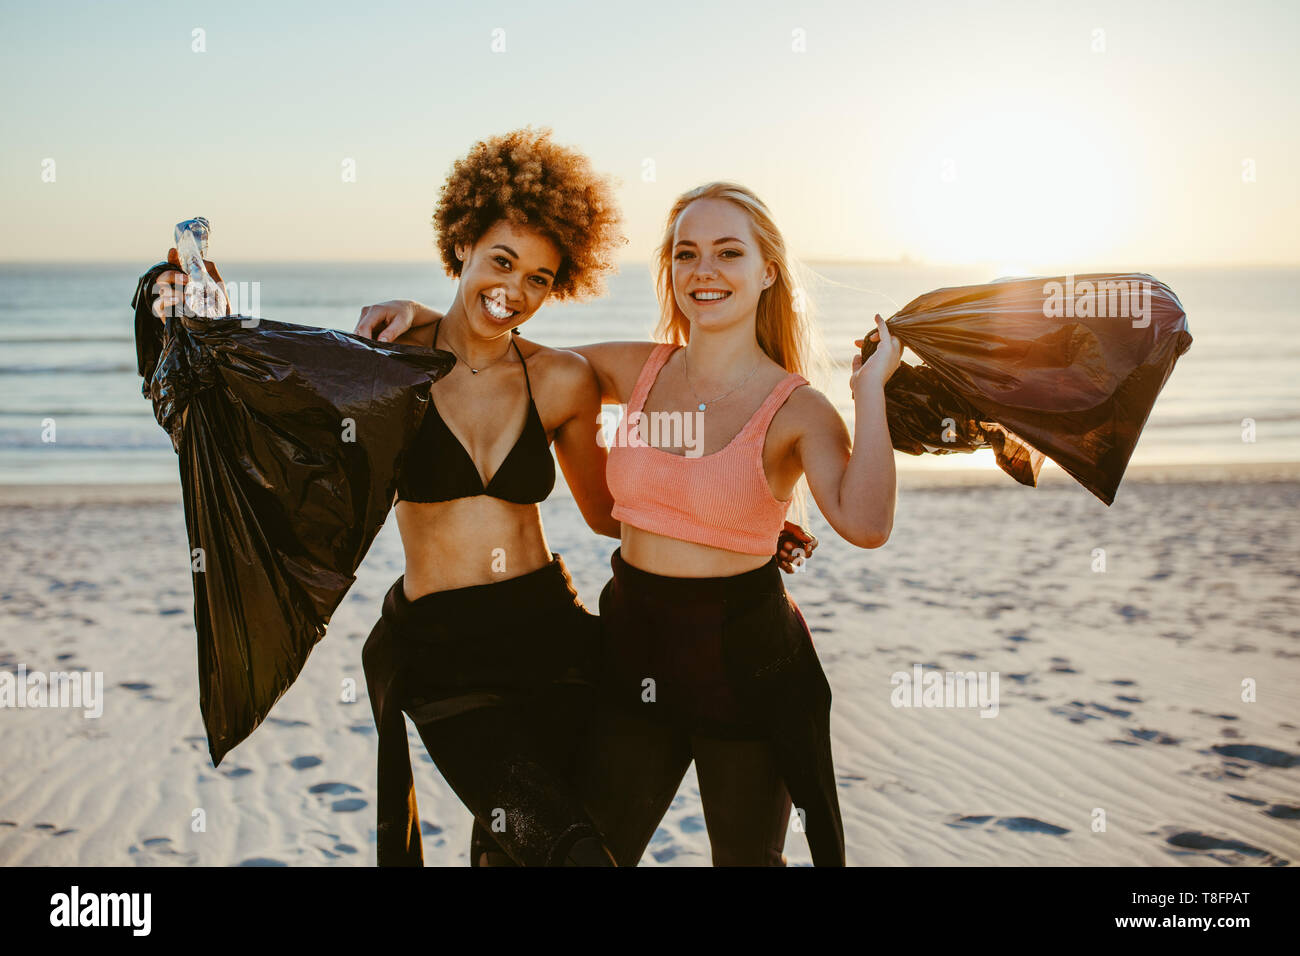 Due giovani volontari di sesso femminile con sacchetto di immondizia. Due surfisti permanente sulla spiaggia con plastica sacchi della spazzatura con il tramonto in background. Foto Stock